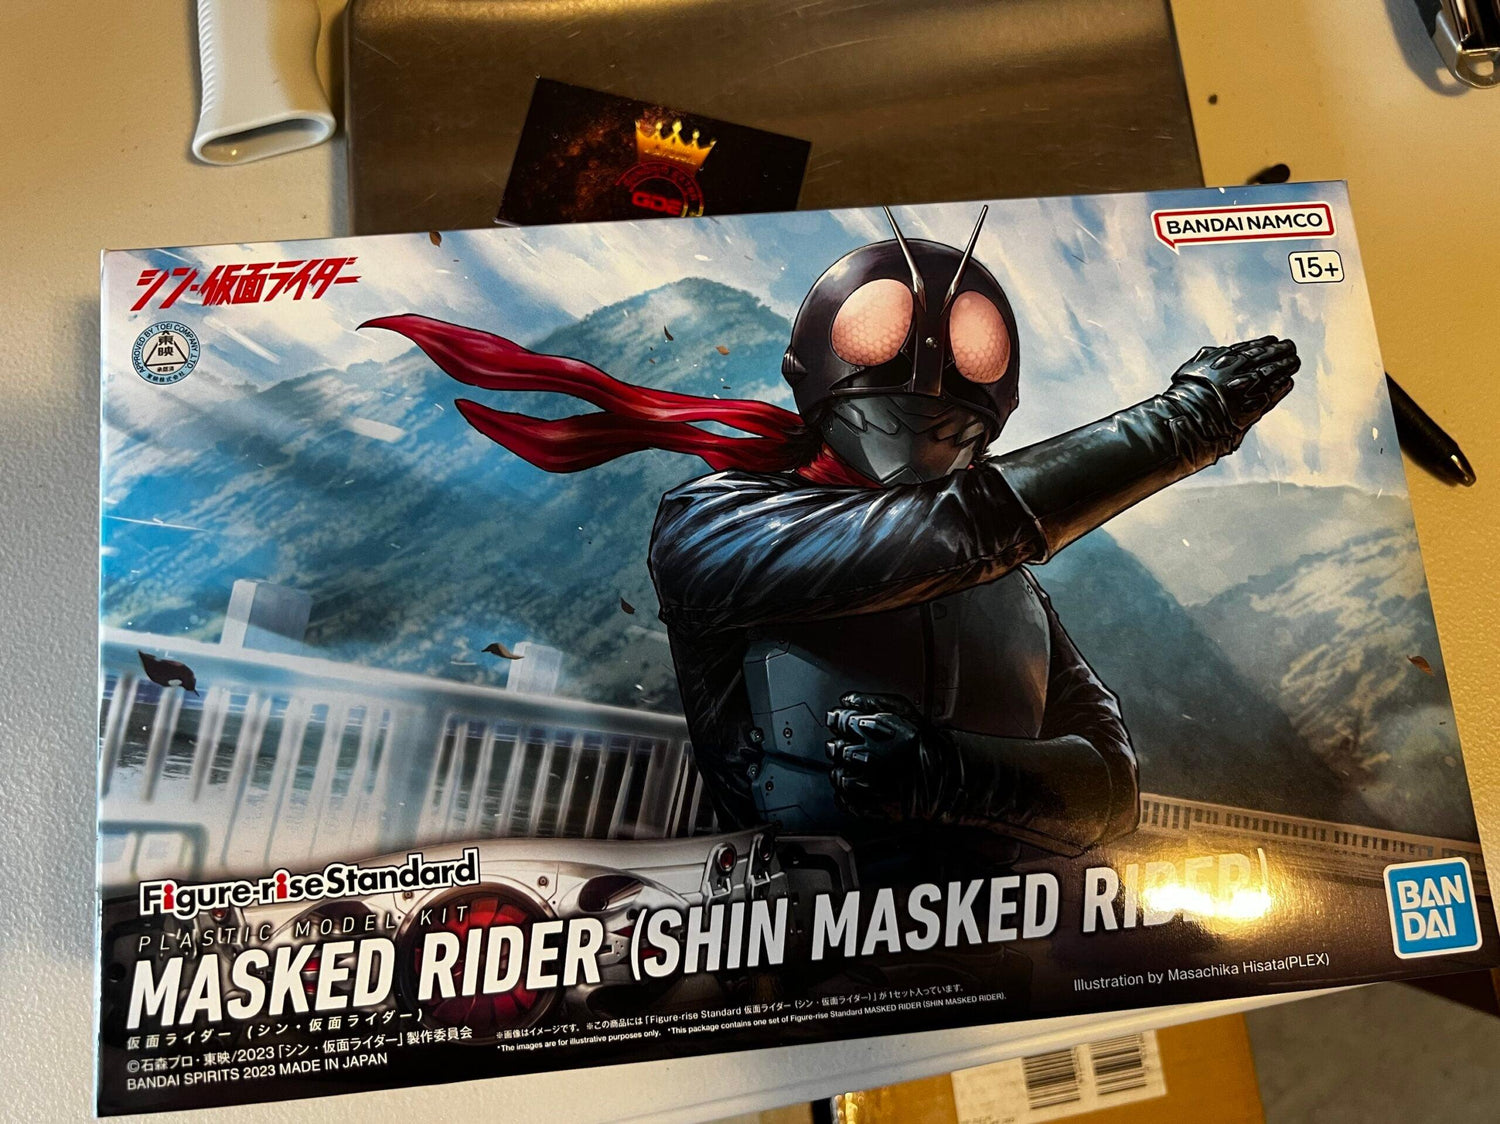 Masked Rider(Shin Masked Rider) - Gundam Extra-Your BEST Gunpla Supplier